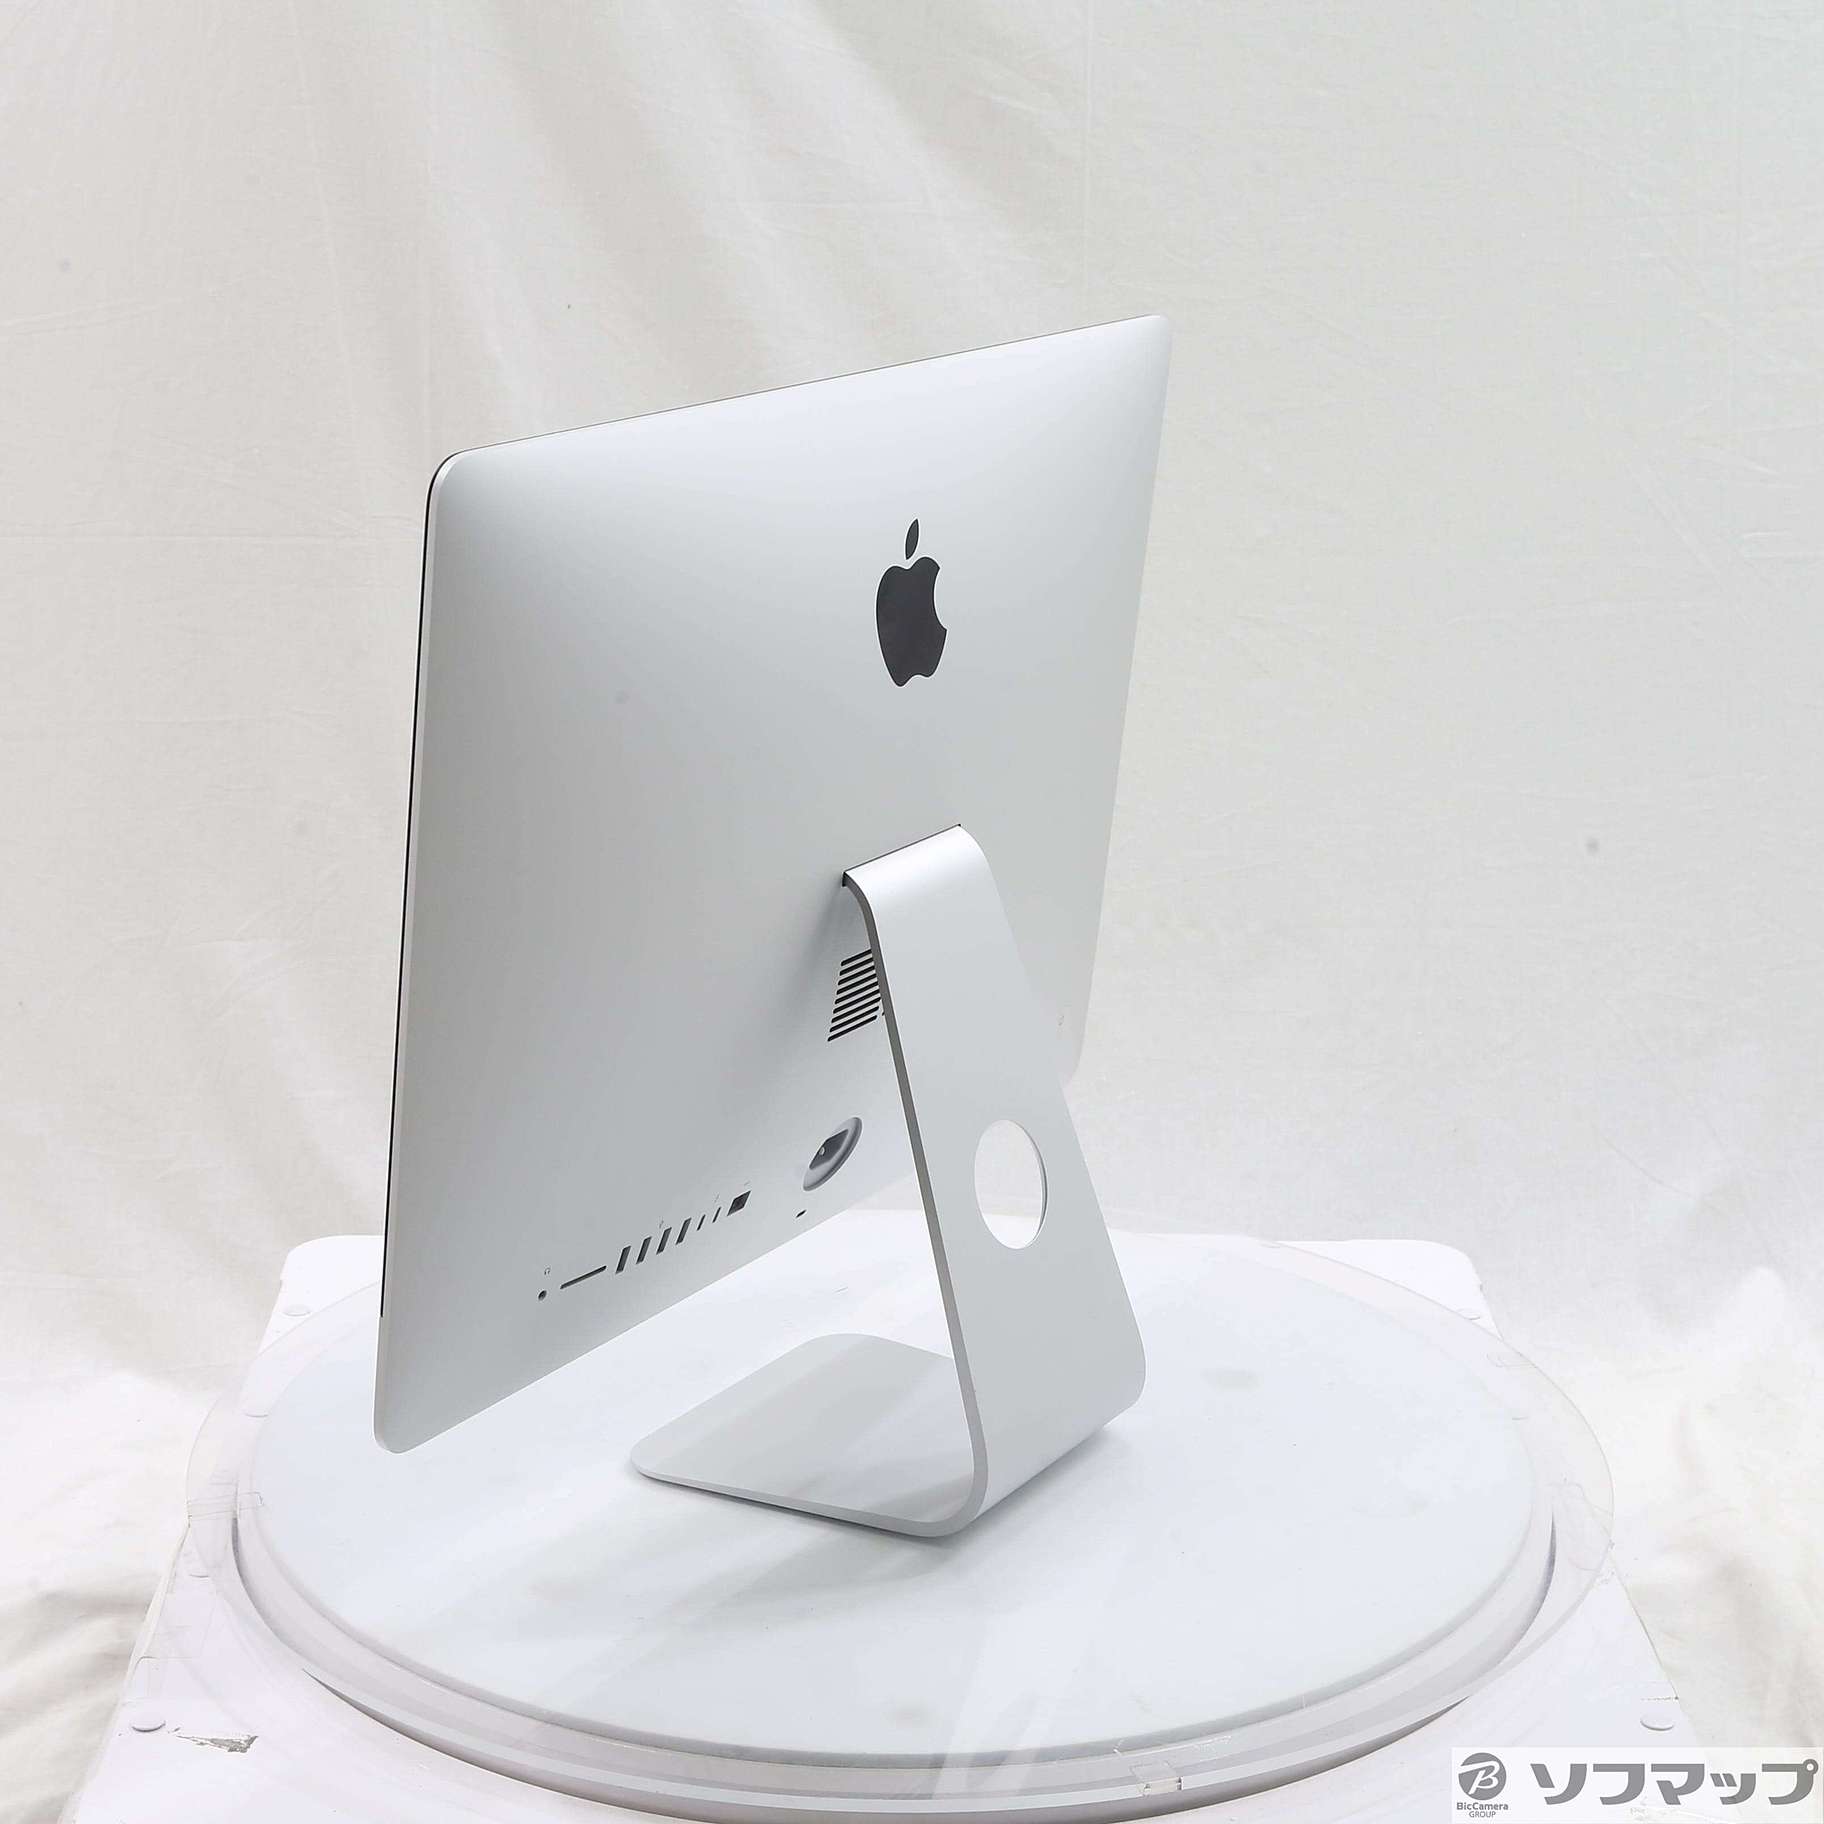 中古】セール対象品 iMac 21.5-inch Mid 2017 MMQA2J／A Core_i5 2.3